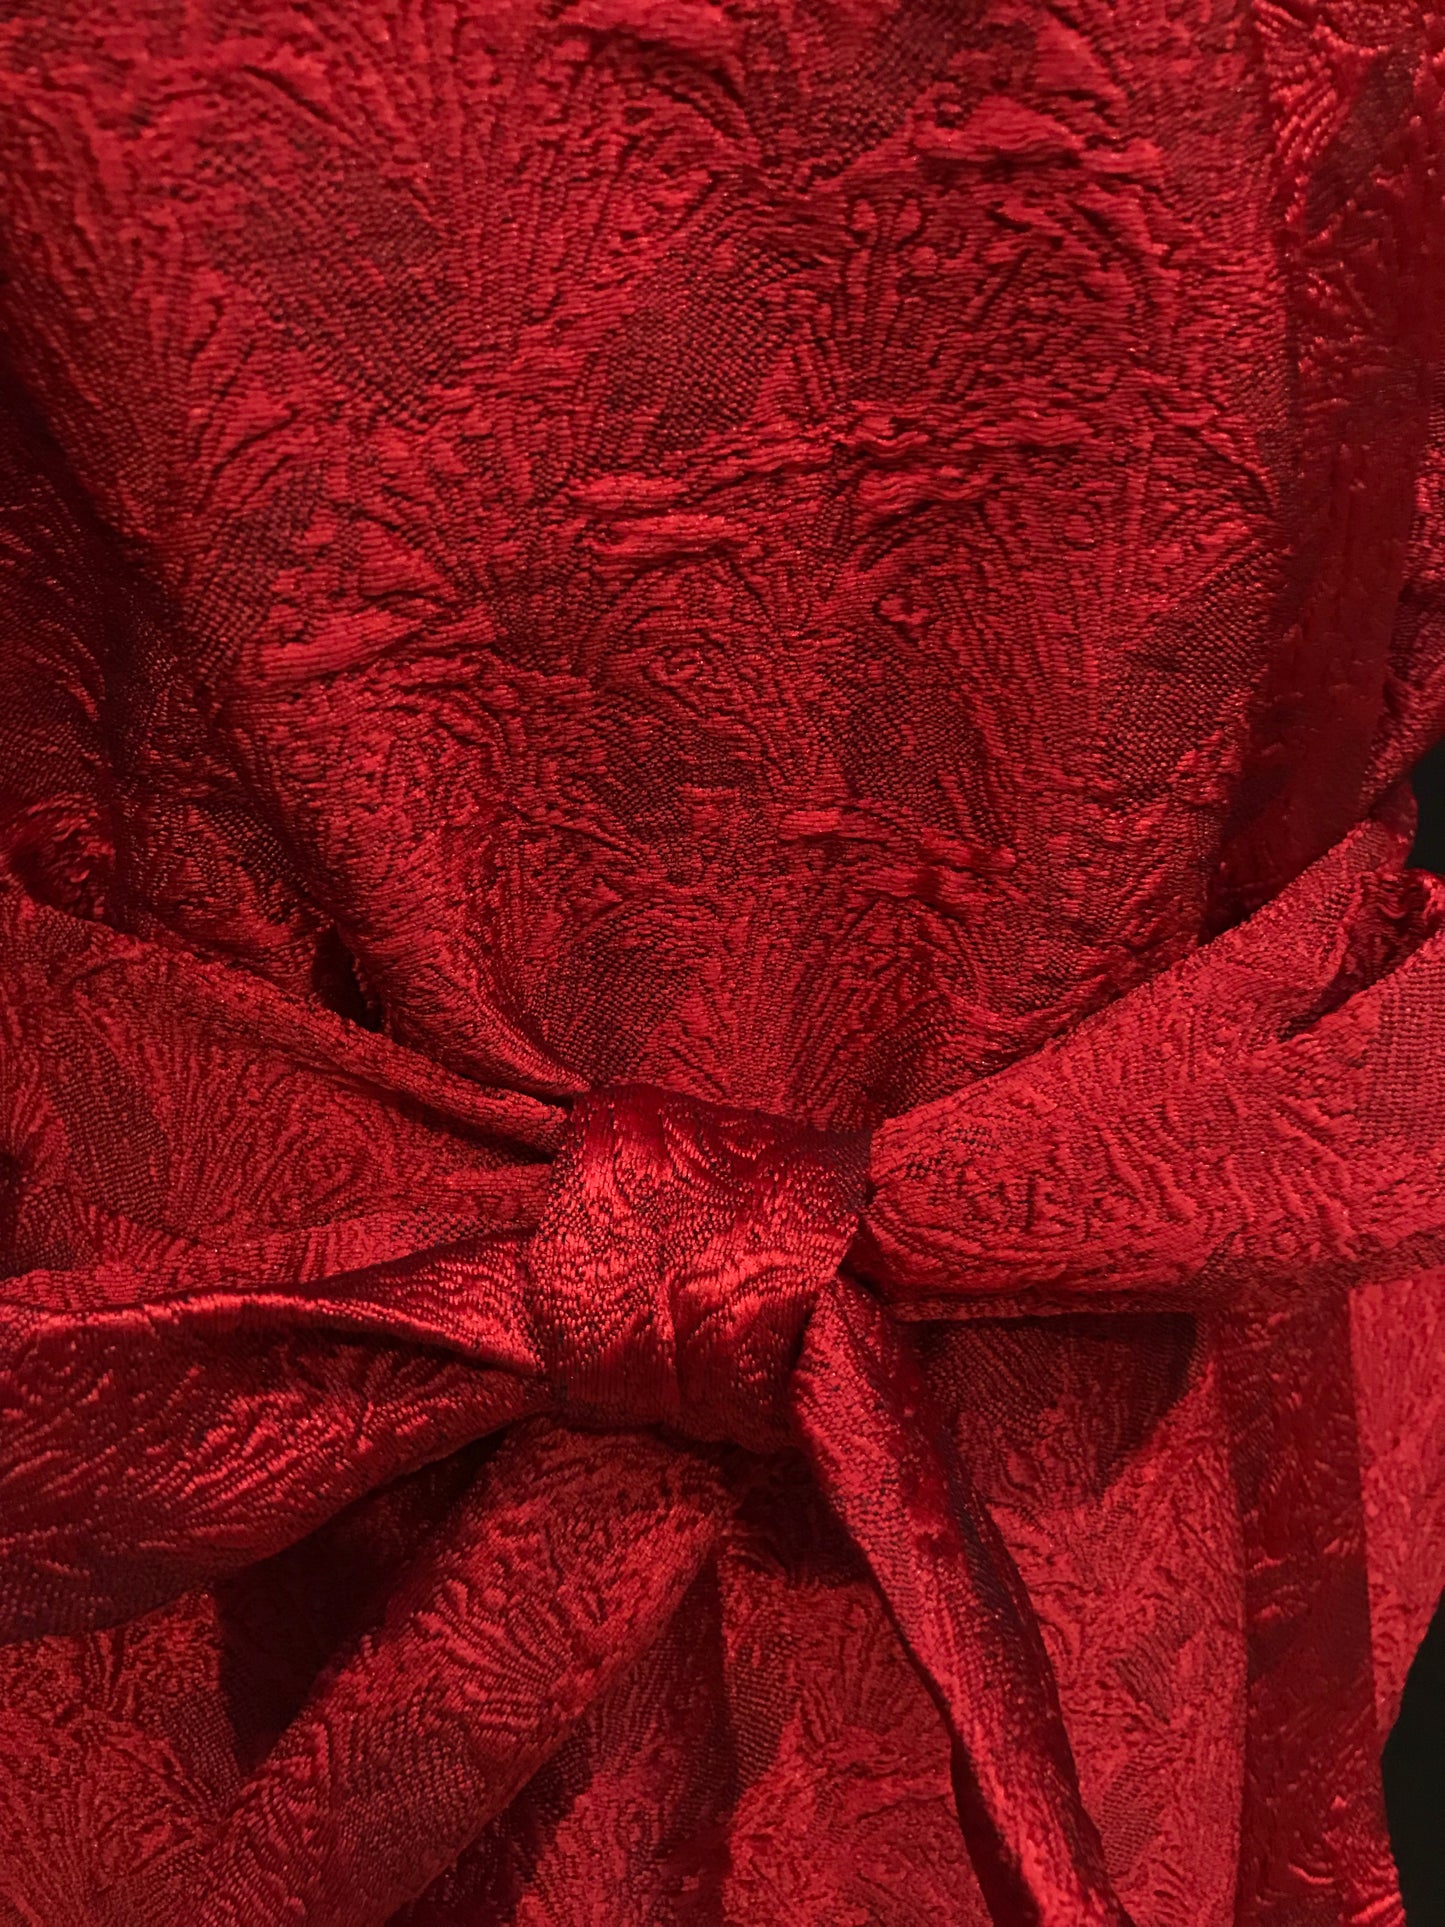 Korte kimono-vest in diep rode jacquard, kant en klaar, onmiddellijk leverbaar.